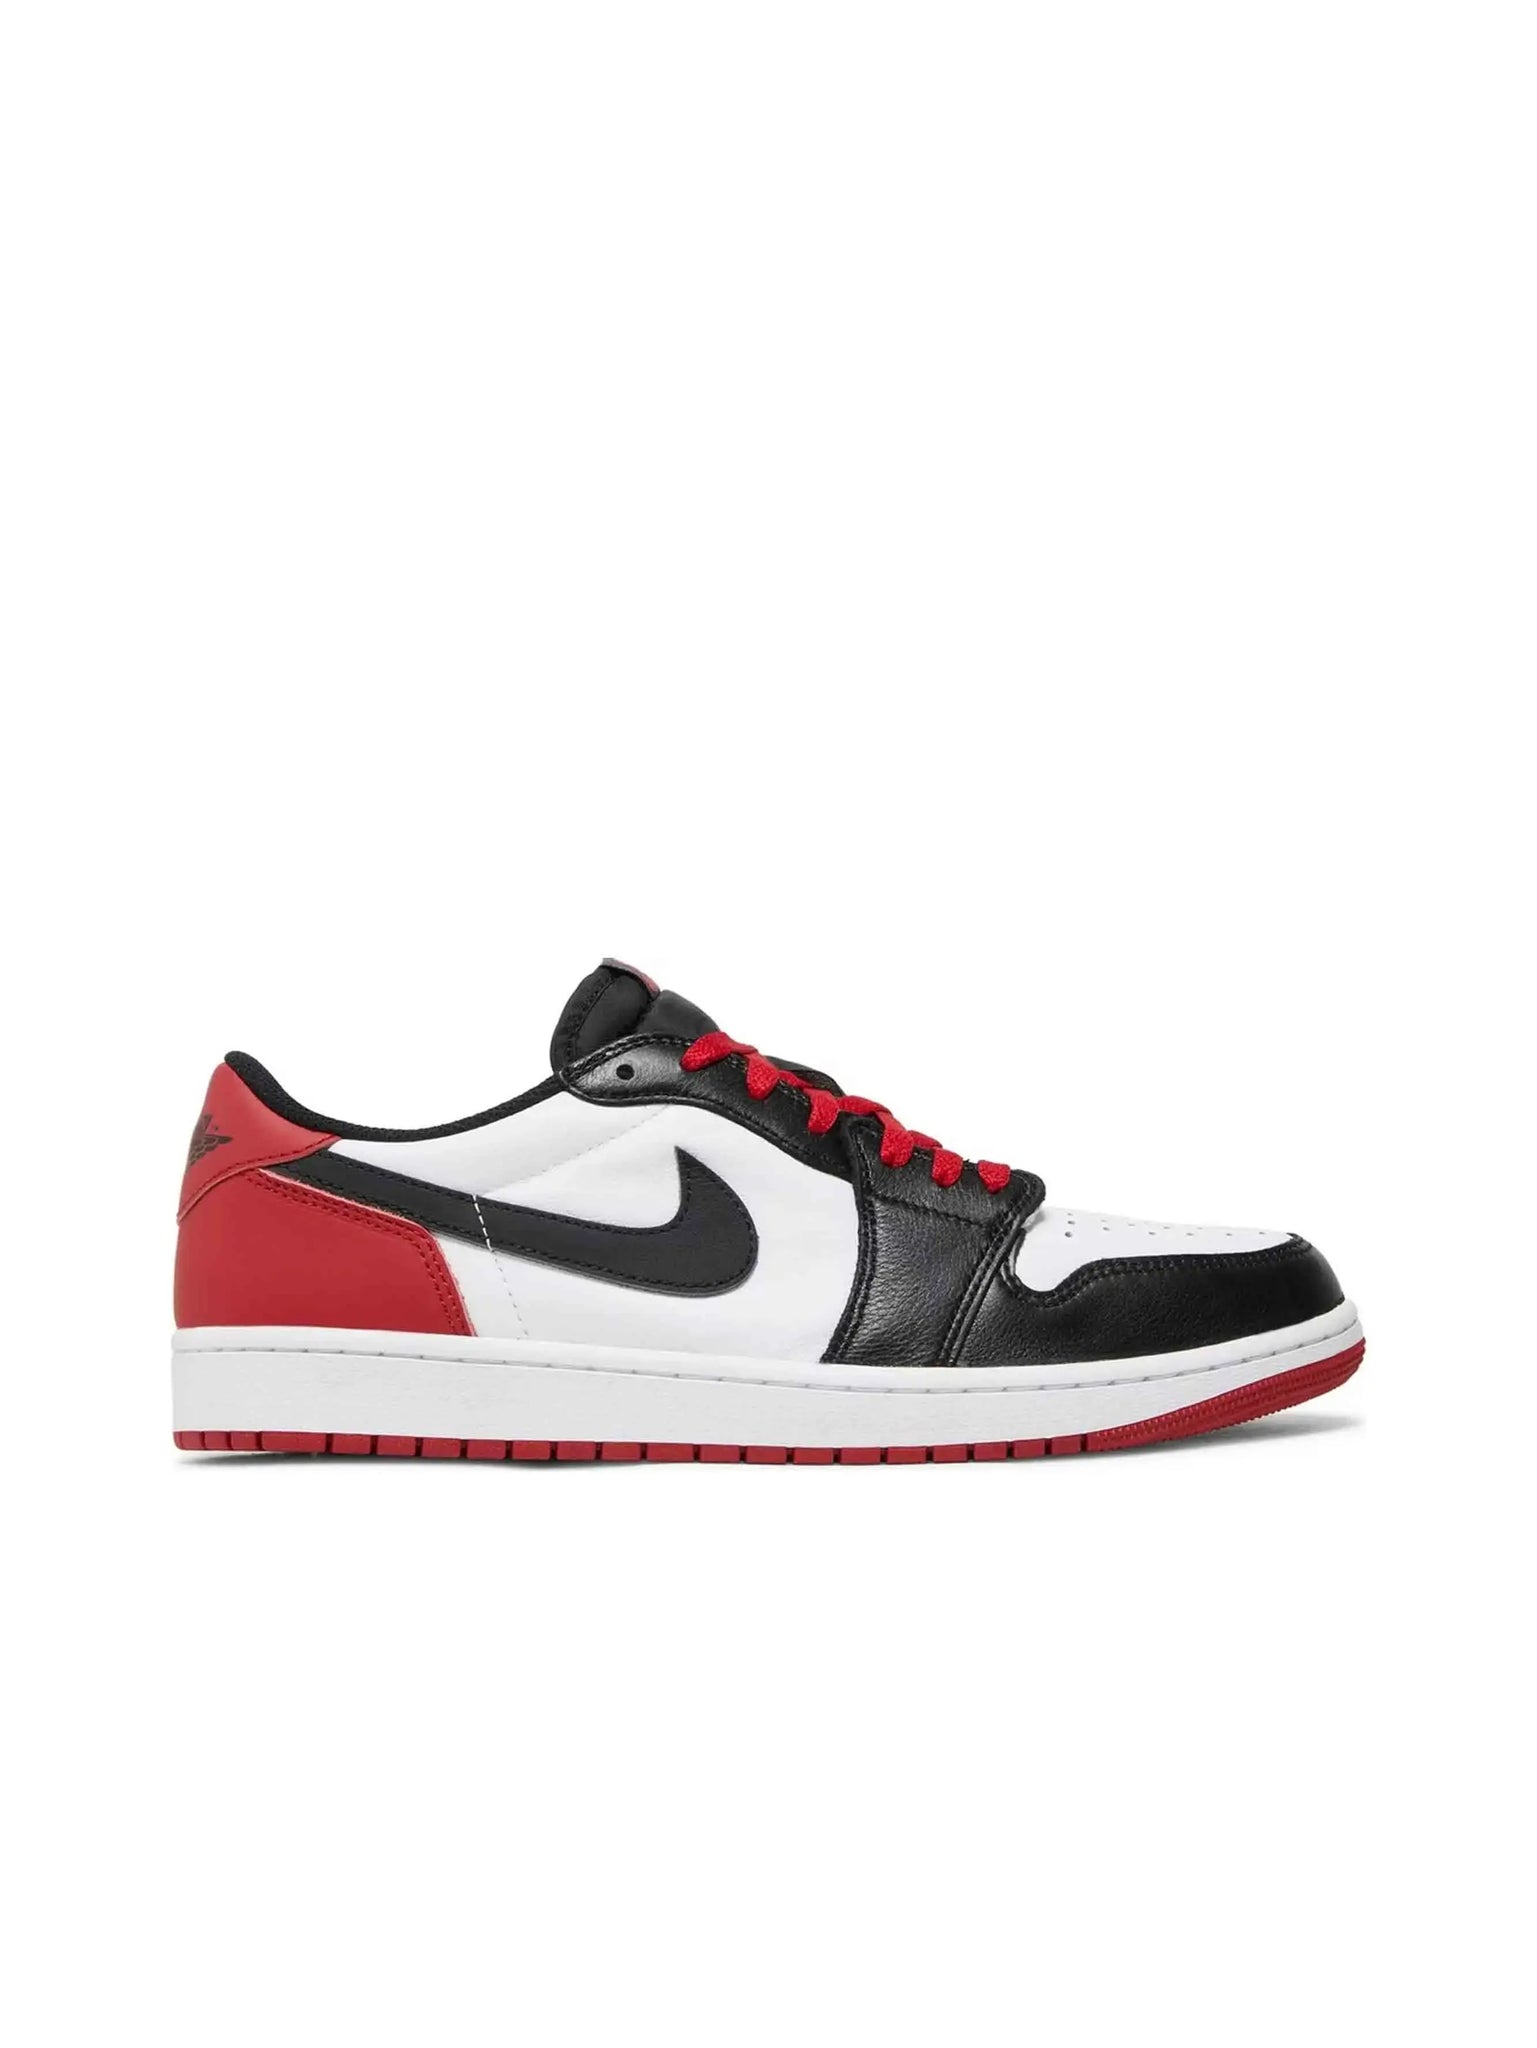 Nike Air Jordan 1 Retro Low OG Black Toe (2023) - Prior